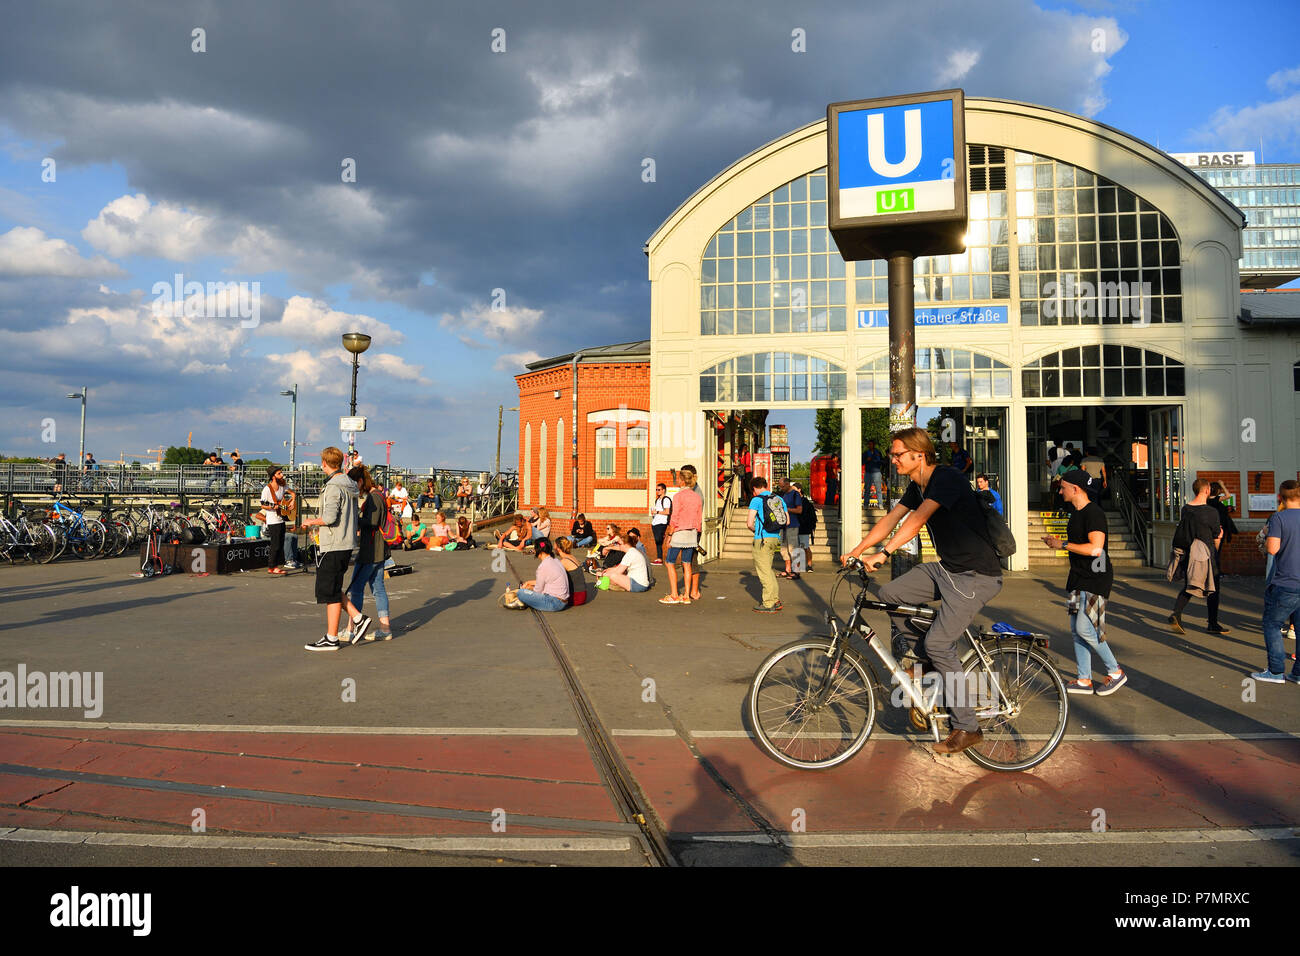 Alemania, Berlín Friedrichshain, Warschauer Strasse U-Bahn Foto de stock